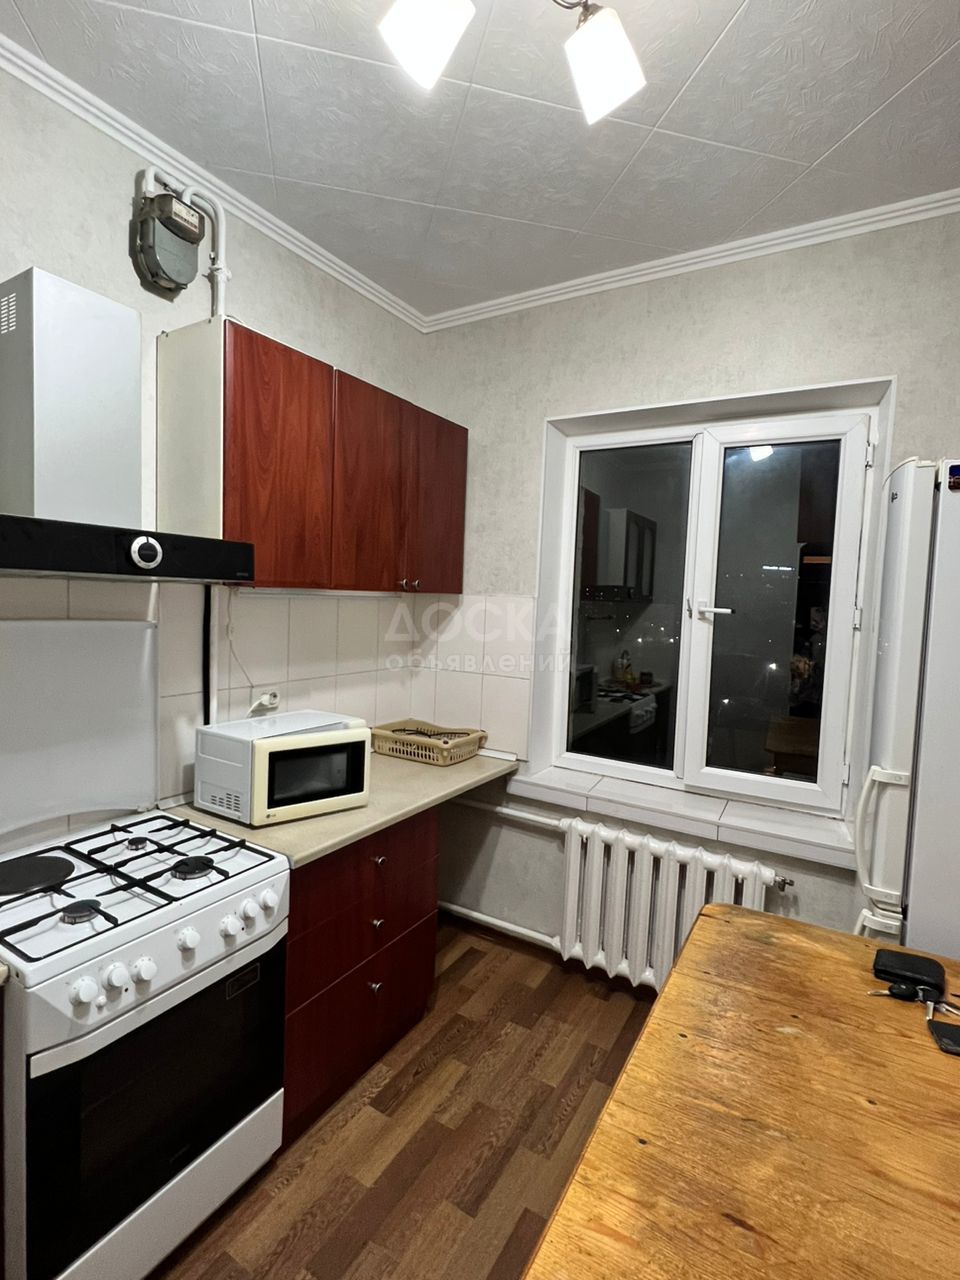 Сдаю 2-комнатную квартиру, 50кв. м., этаж - 5/5, Суюмбаева- Московская,после капитального ремонта.